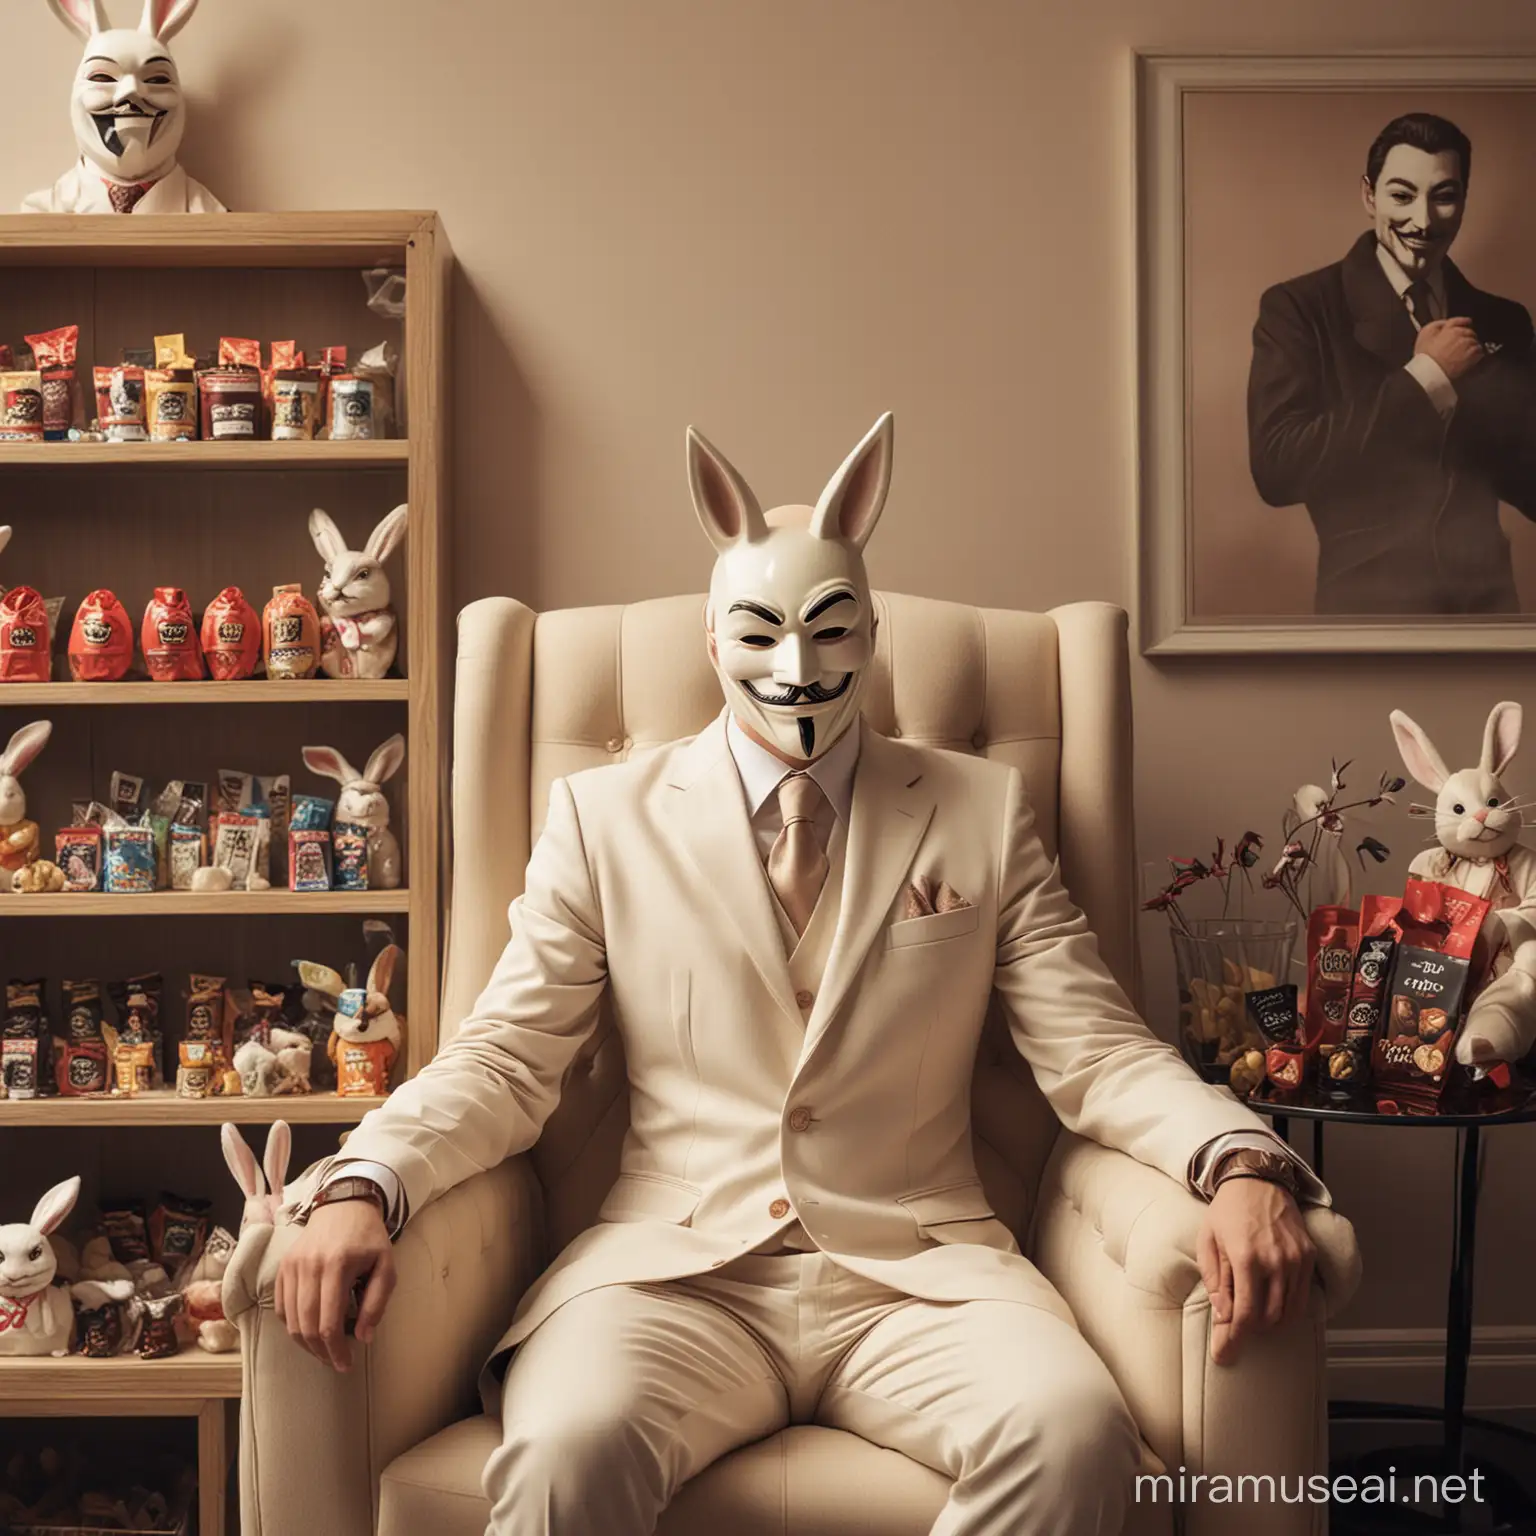 Homem sentado em uma poltrona, usando máscara do anonymus (v de vingança) vestindo um terno de cor clara. Ao redor, dois coelhos da páscoa e no fundo uma vitrine com chocolates e ovo da páscoa. No teto uma luz leve.